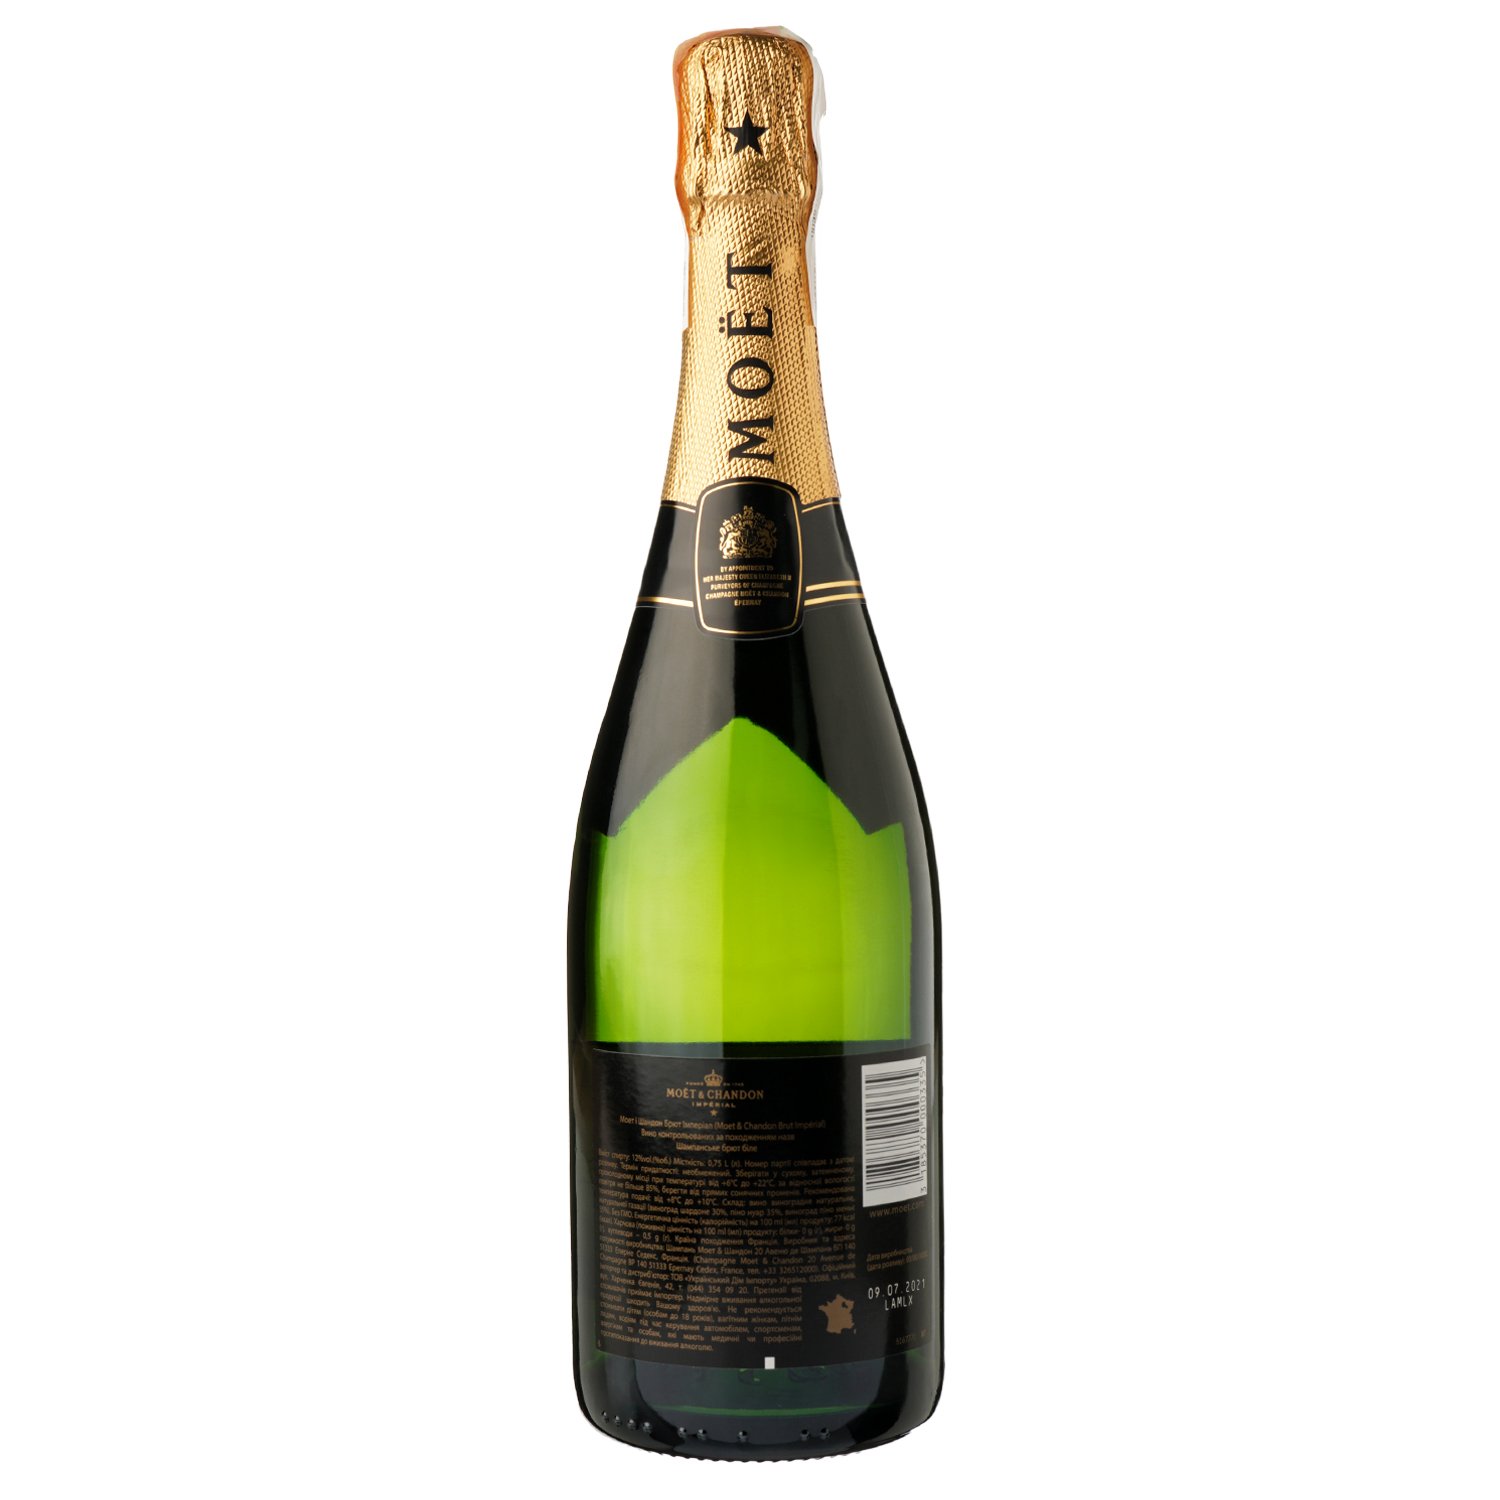 Шампанське Moet&Chandon Brut Imperial, біле, брют, AOP, 12%, в коробці, 0,75 л (31055) - фото 3